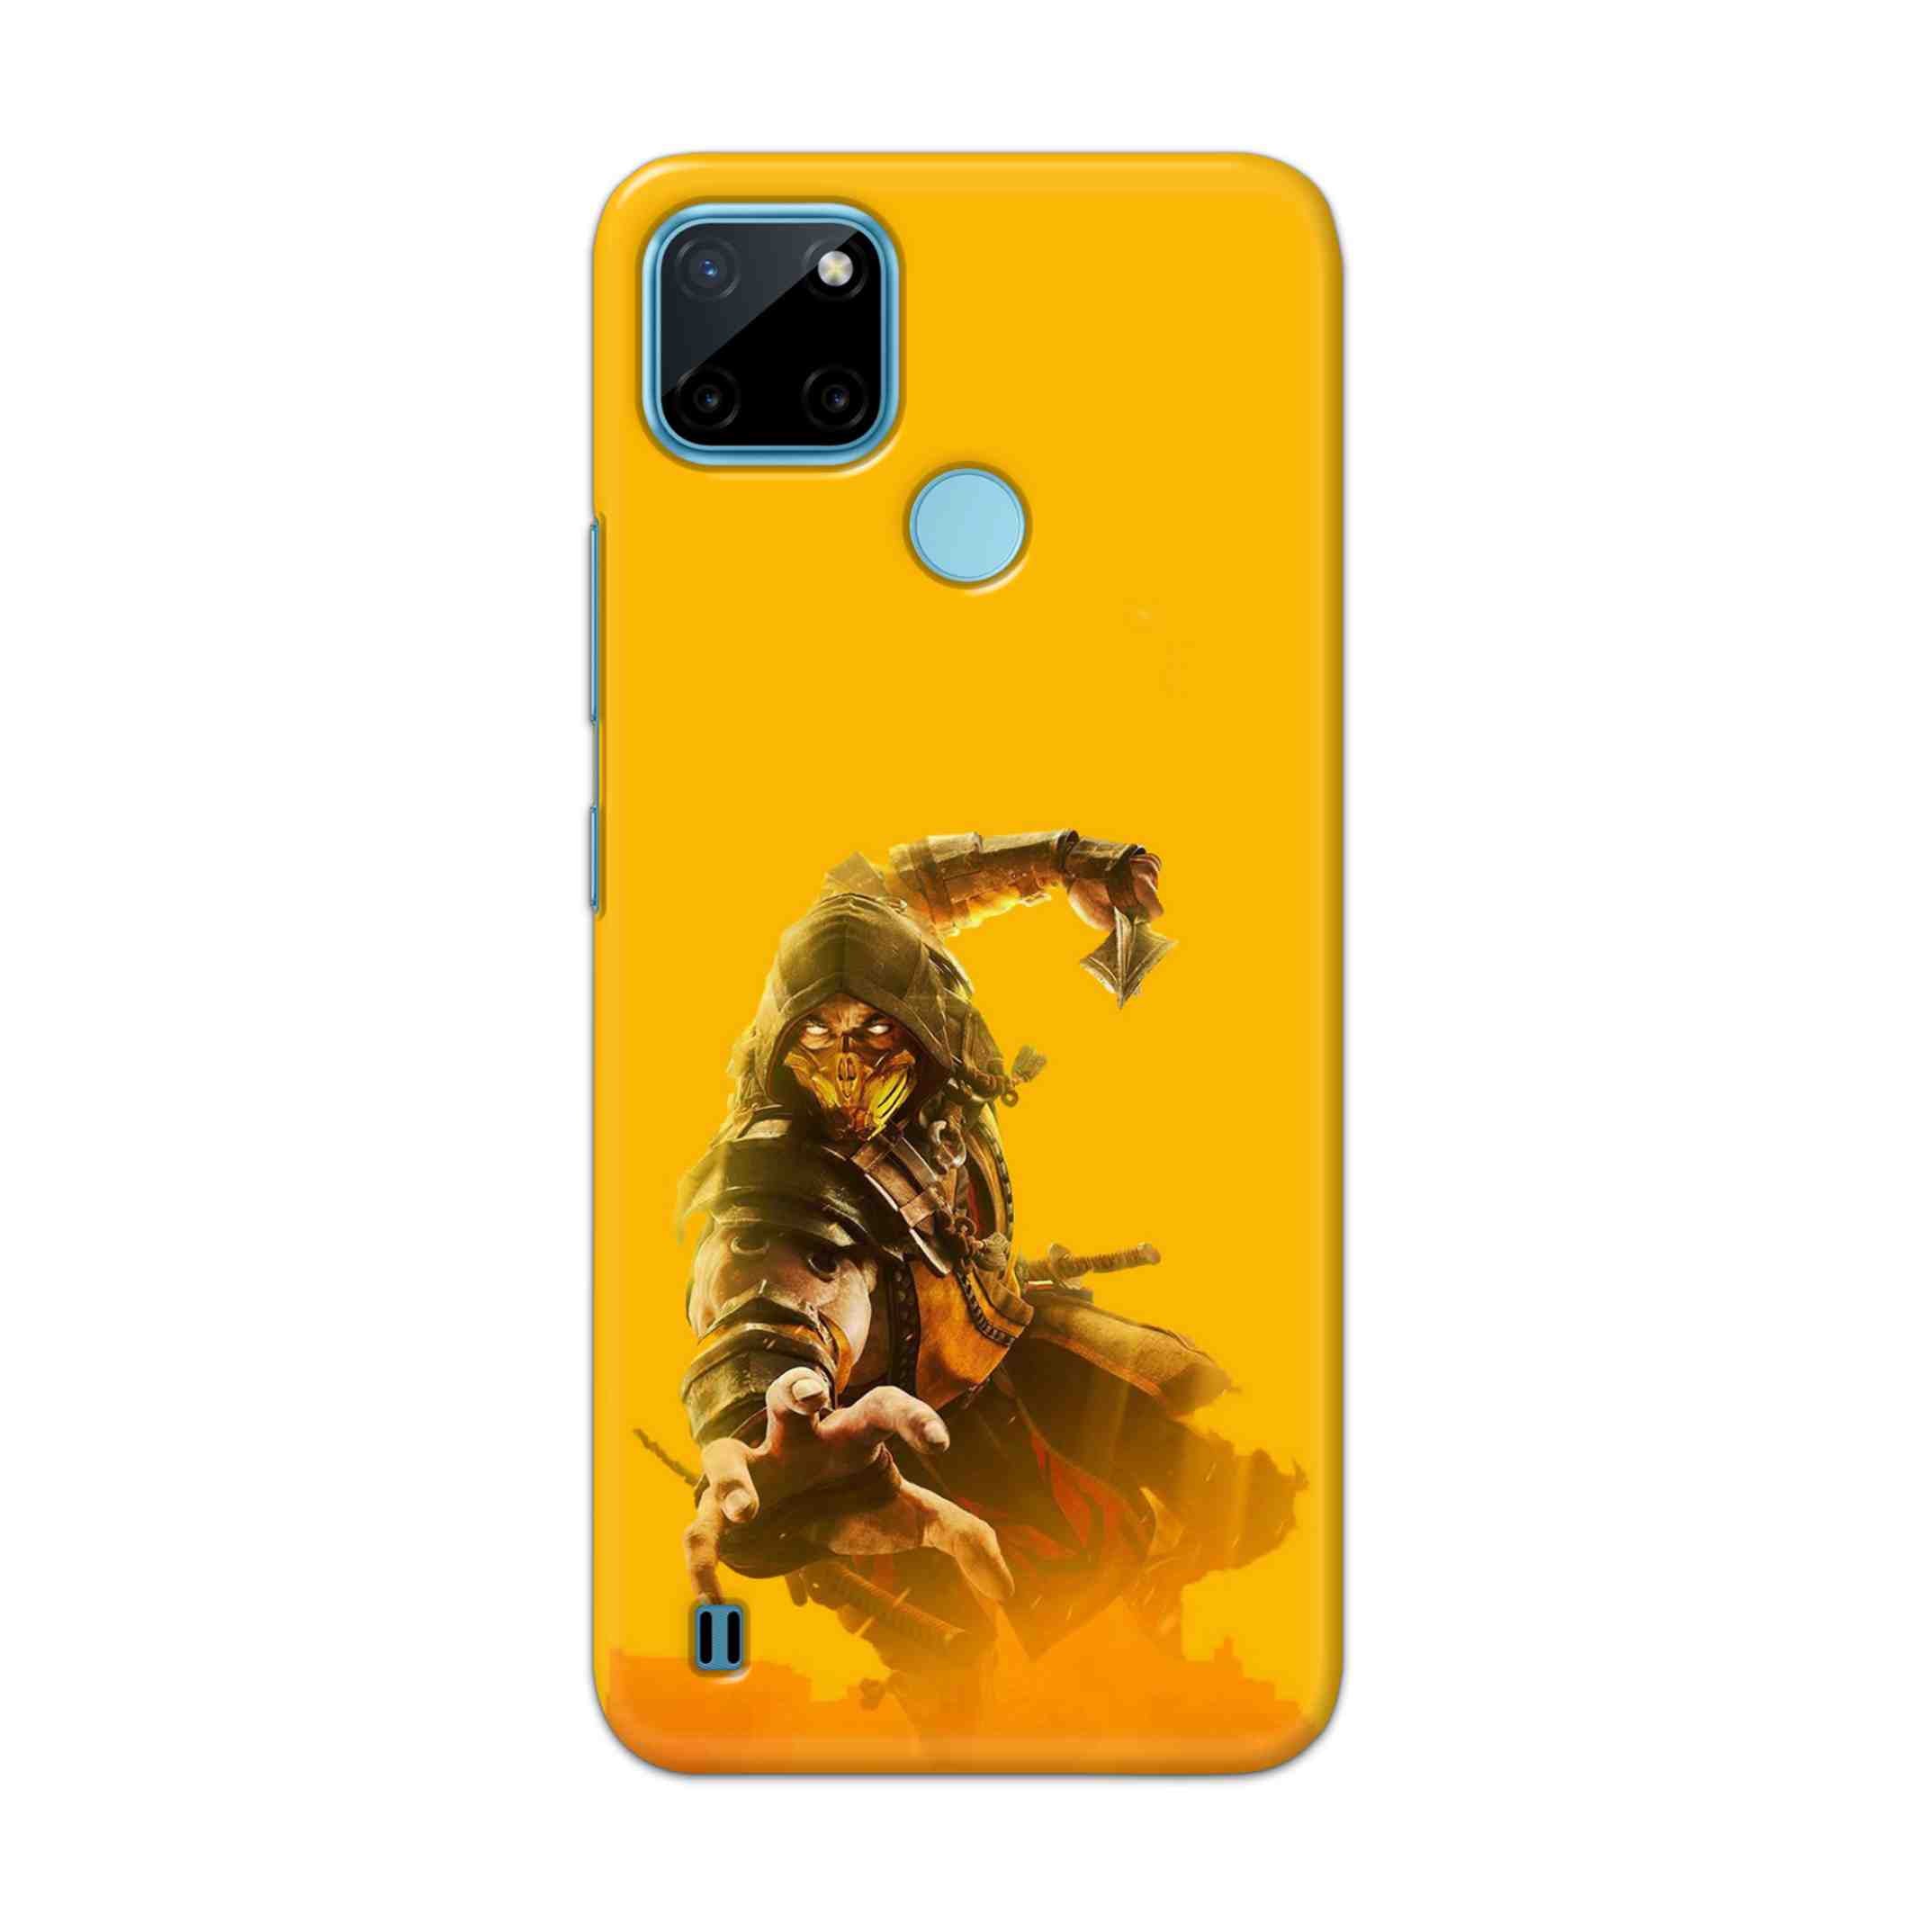 Buy Mortal Kombat Hard Back Mobile Phone Case Cover For Realme C21Y Online